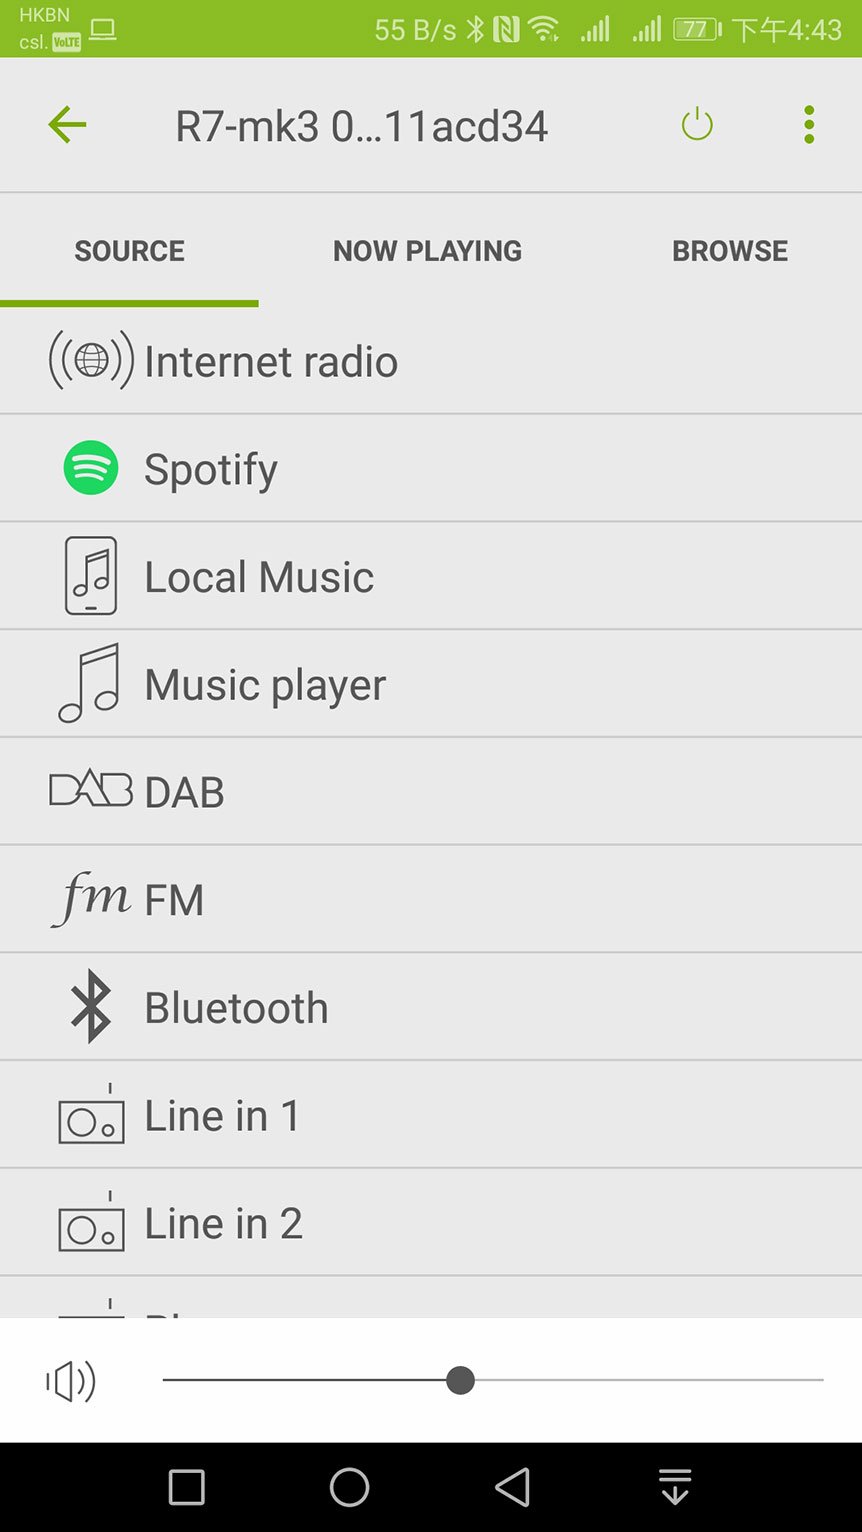 之前試過幾款 Ruark Audio 都係「微型音響」，細細件適合擺睡房、書房使用，今次借到手測試的 R7 MK3 就有少少特別，雖然都係行復古型格設計，不過就幾巨形吓。驟眼望落去似足一張小桌子，實際上係一隻集齊 CD、藍牙 aptX-HD、Spotify 同 DLNA 音樂串流功能於一身的「座地」喇叭，家居要有返咁上下空間先適合，不過外形就真係好特別，夠晒復古同有型，作為家居裝潢一部分相當正。